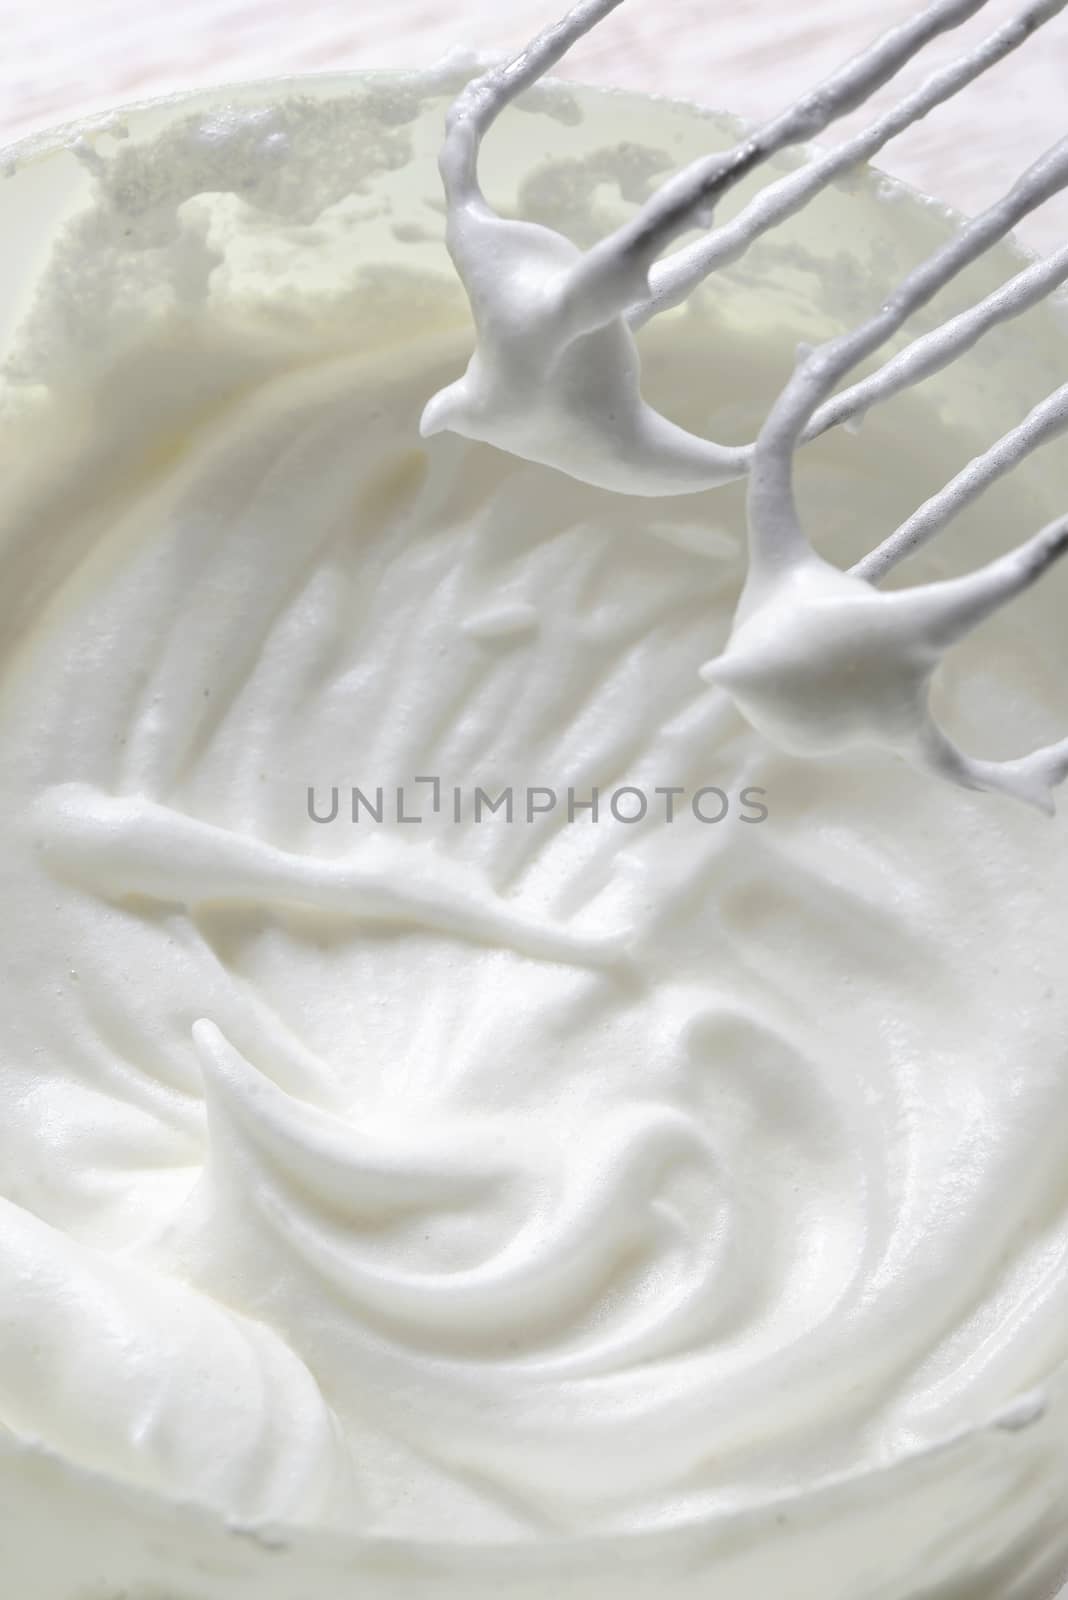 Whipped egg whites for cream  by jordachelr